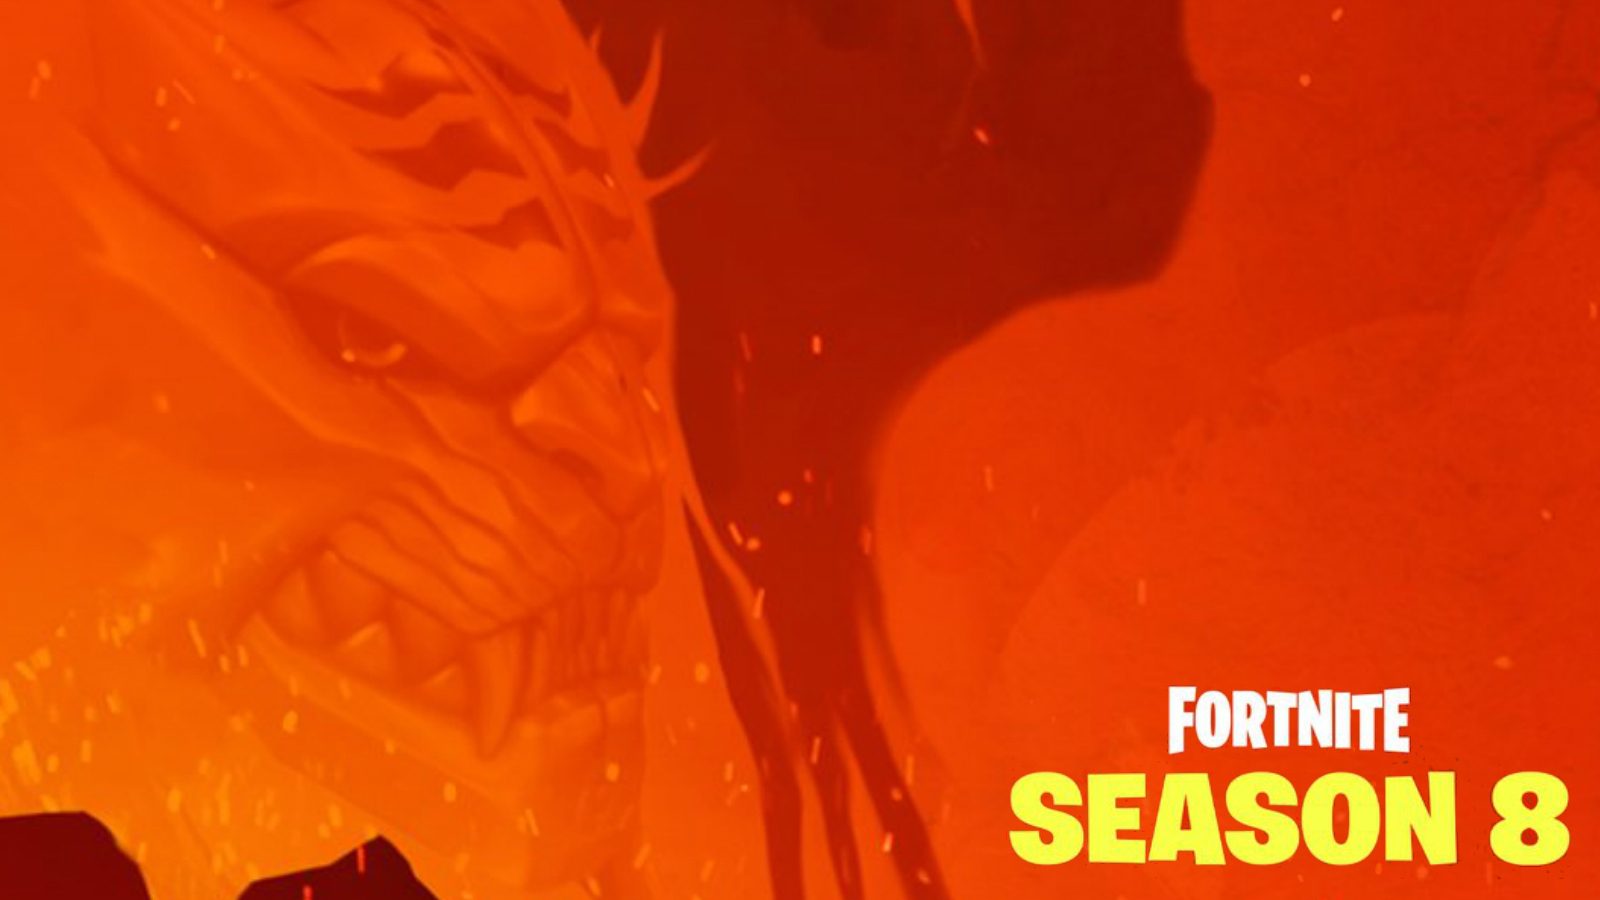 Temporada 8 De Fortnite El Tercer Teaser Revela Al Fin A Los - podemos asociar este dragon a la desaparicion de los huevos de dragon que tuvo lugar poco antes del fin de la temporada 7